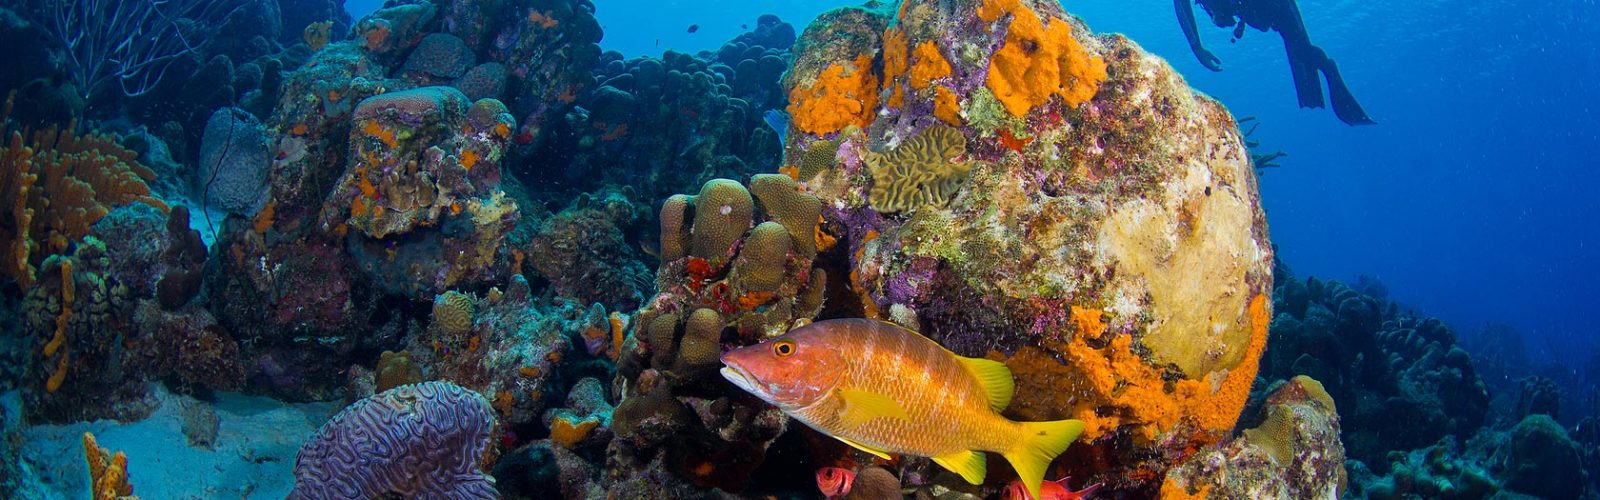 Bonaire | Maduro Dive | Exclusive Scuba Diving Packages